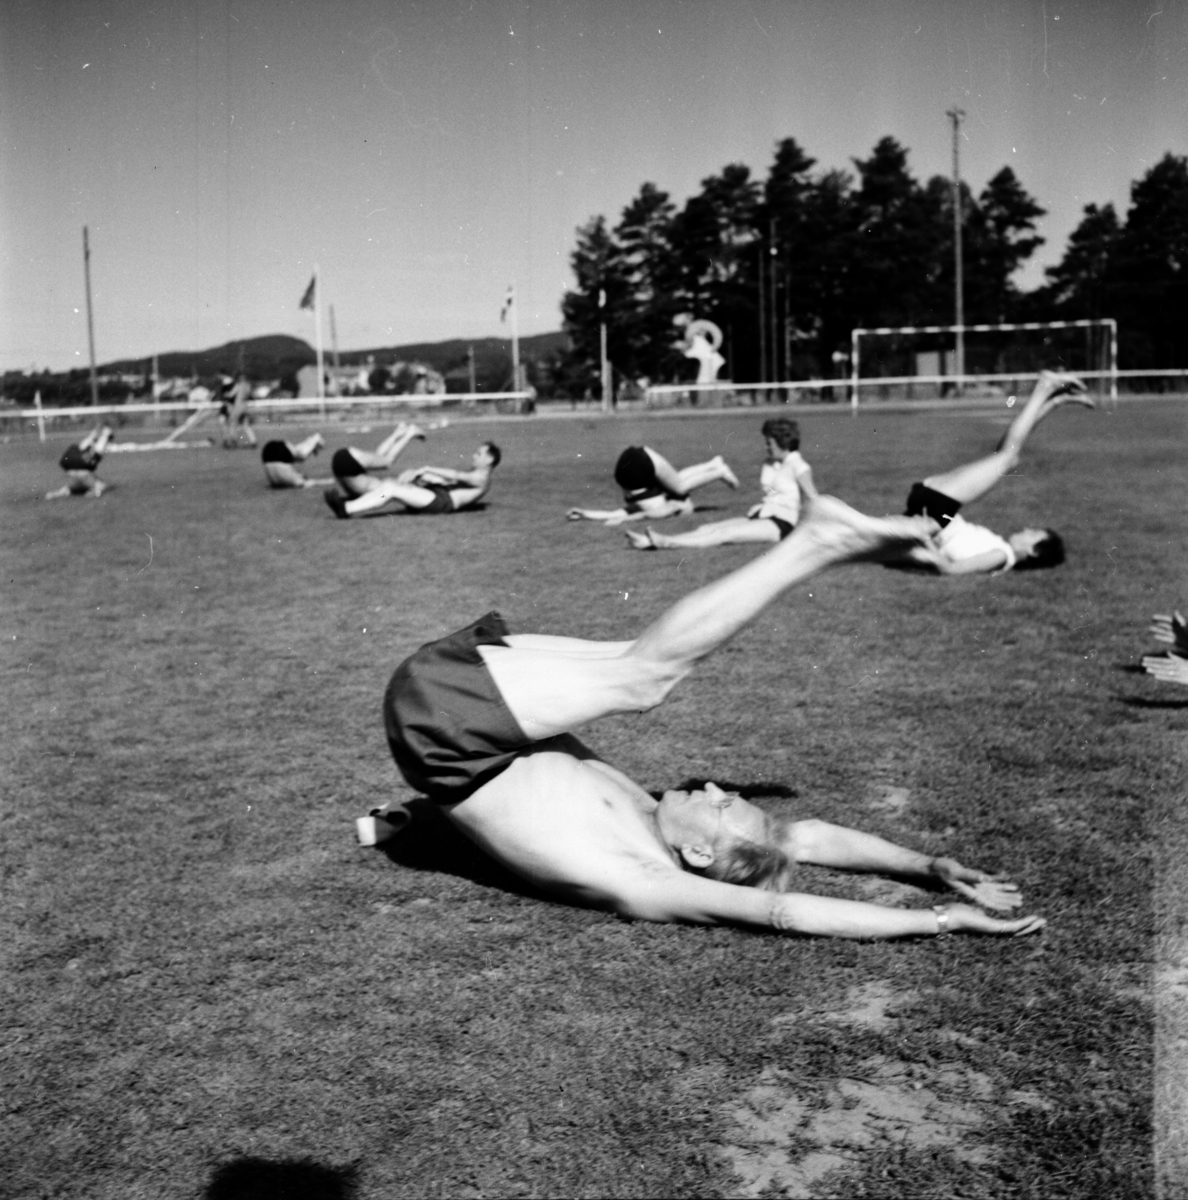 Rikslägret, Frisksport
1959